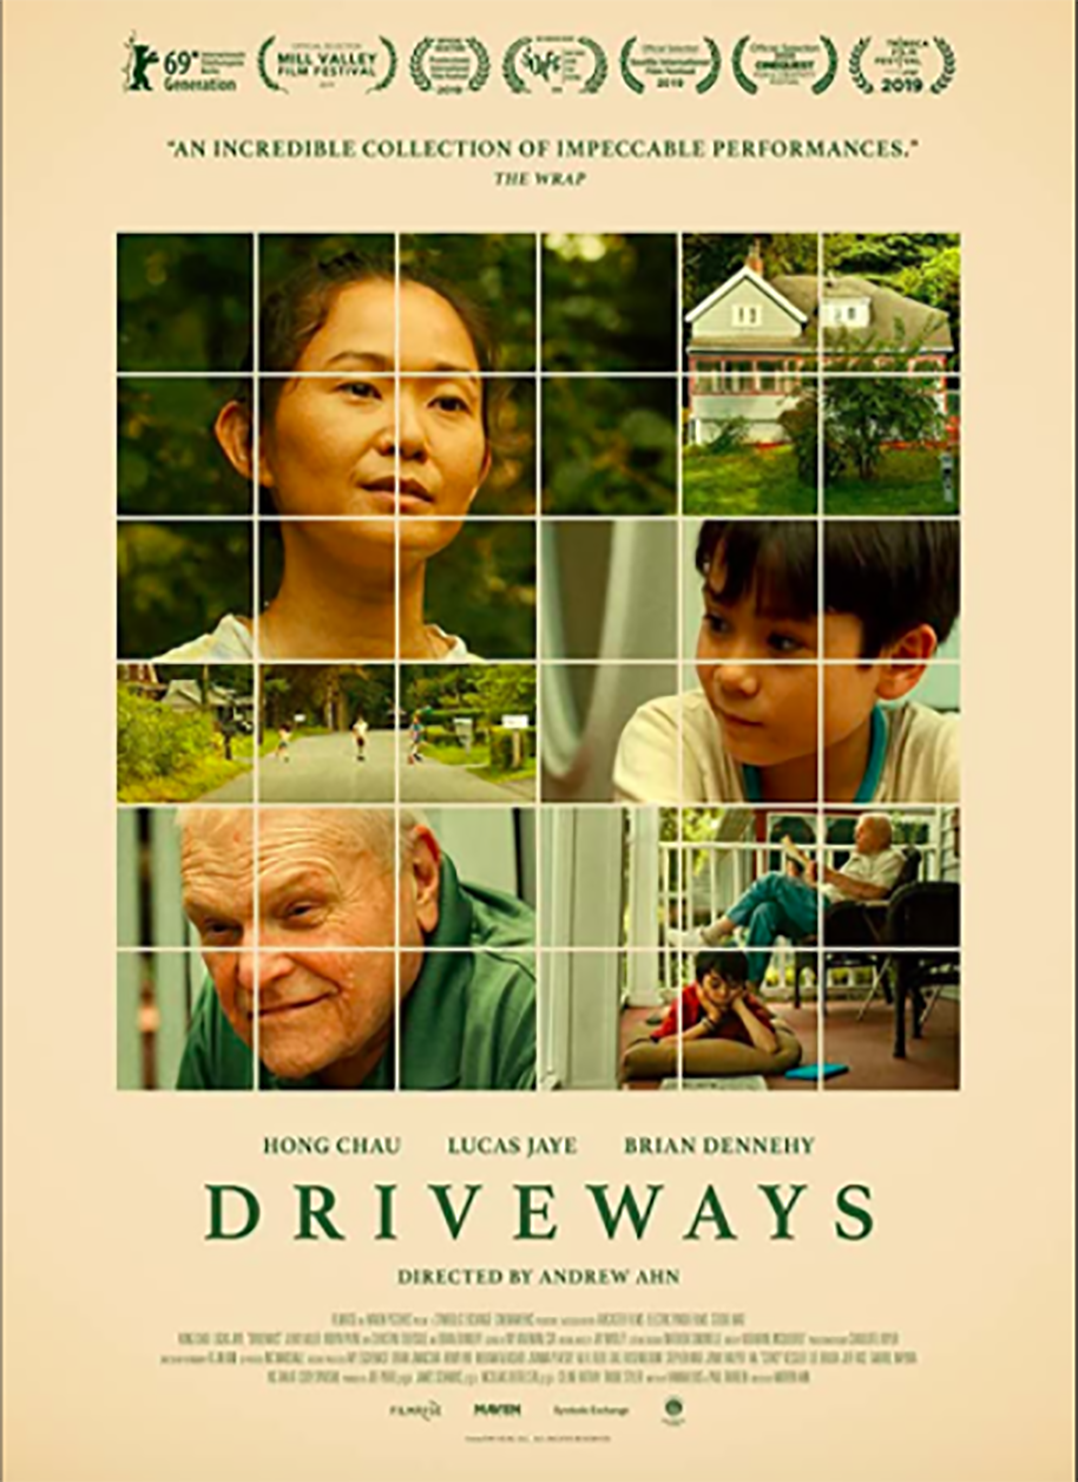 ‘Driveways’ is Dennehy’s Oscar-worthy swan song